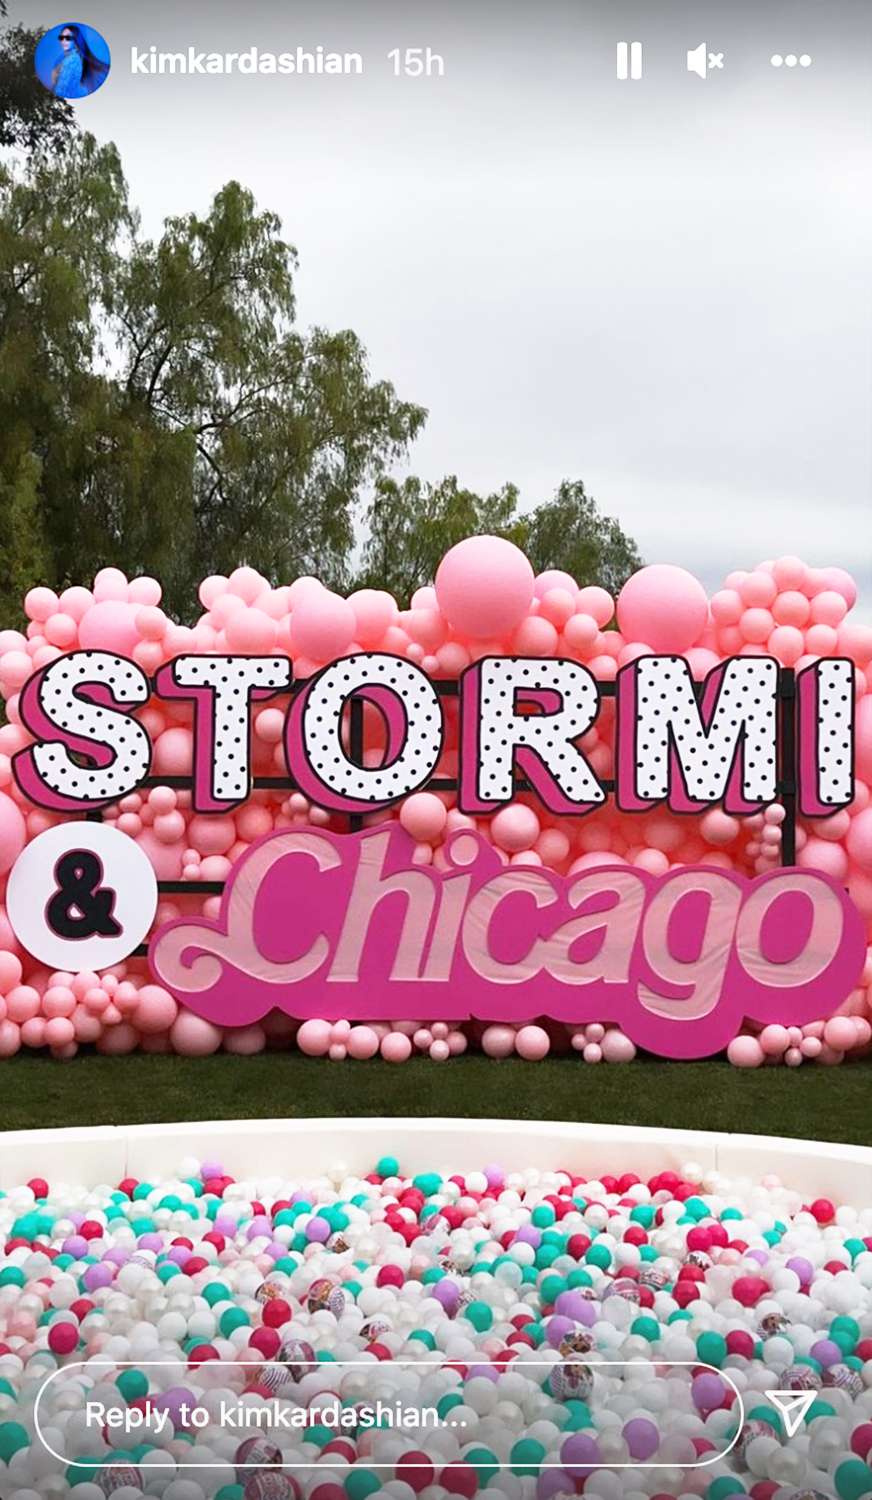 Família Kardashian-Jenner celebra a festa de 4 anos conjunta de Chicago e Stormi - veja as fotos cor-de-rosa